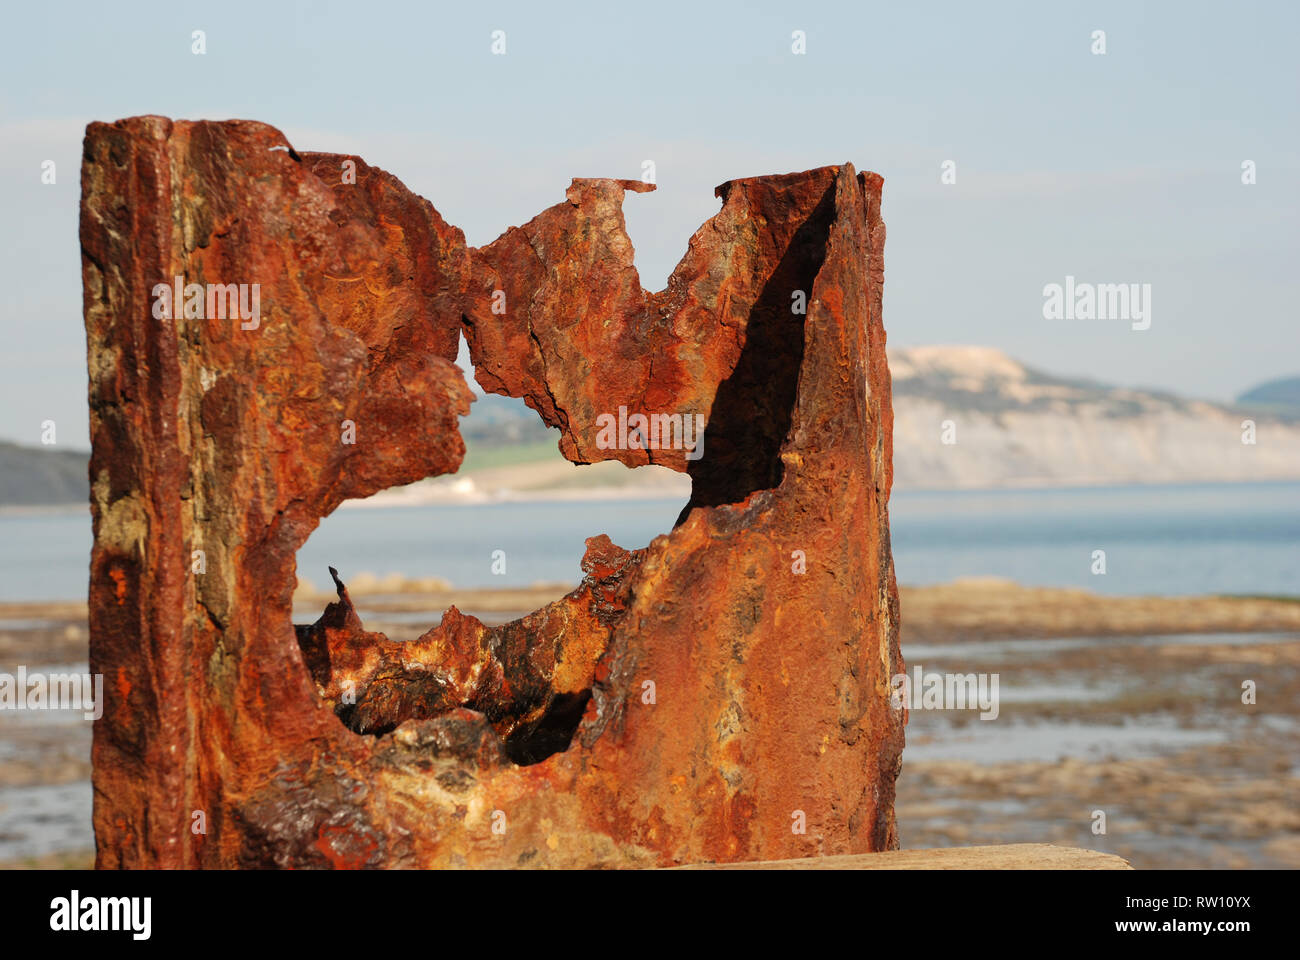 Verrostete Leiste an der Südküste zeigt deutlich die Oxidation, das Abblättern, die Verfärbung und die Zerstörung, die im Laufe der Zeit entstanden sind Stockfoto